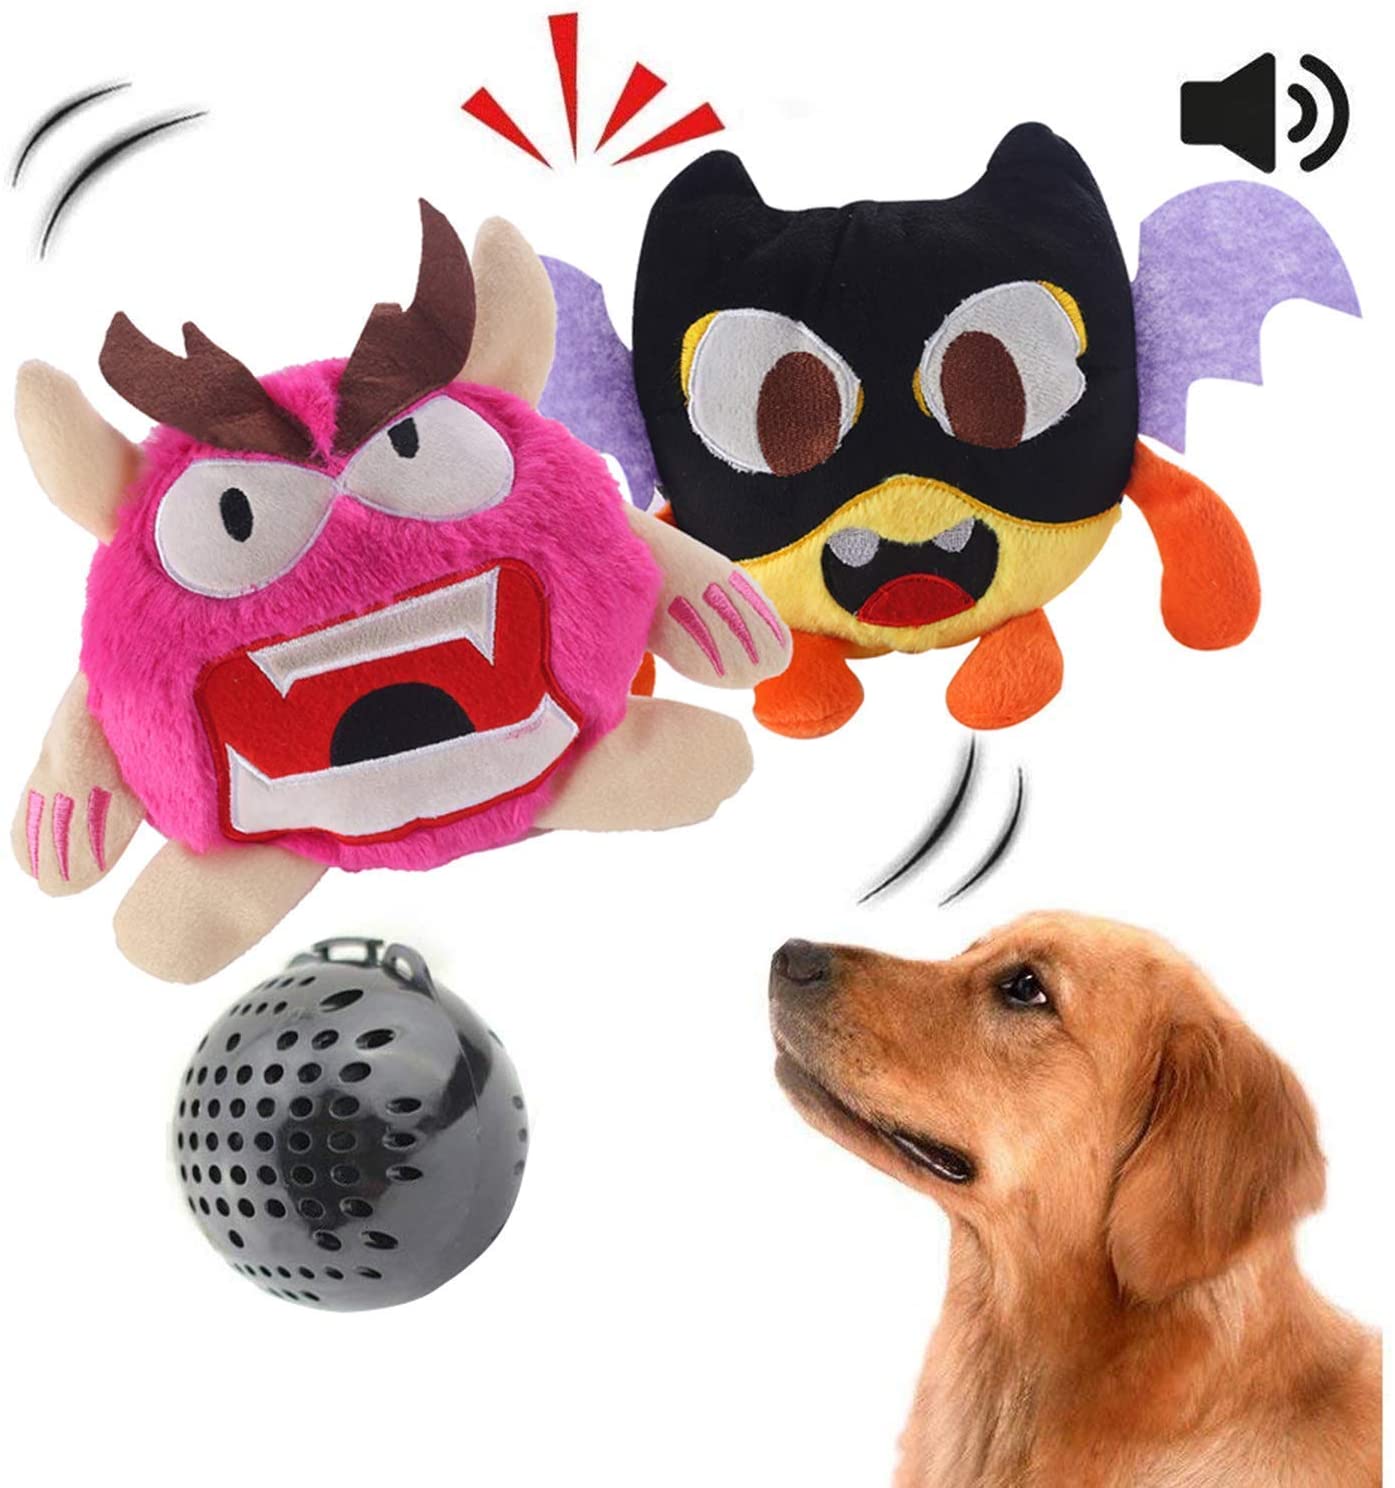  Juguete para perro Juguete interactivo para perro de peluche zumbido Juguete de pelota automático Electrónico Sacudiendo el juguete de salto loco Deportes 2 juegos 